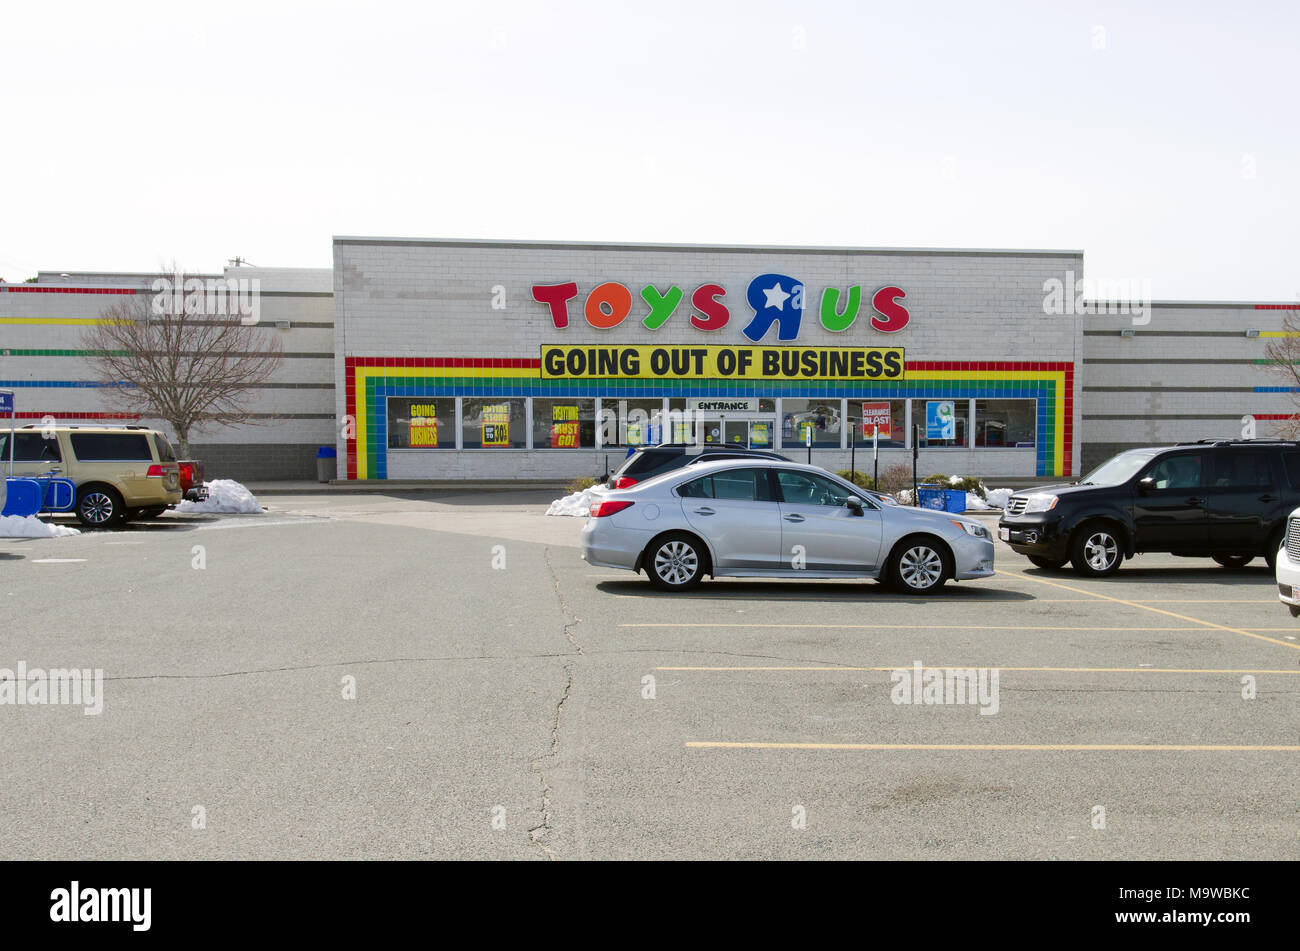 TOYS R US store in Kingston, Massachusetts, USA mit Erlöschen des Geschäfts Fahne über äußere storefront Eingang am 27. März 2018 getroffen Stockfoto